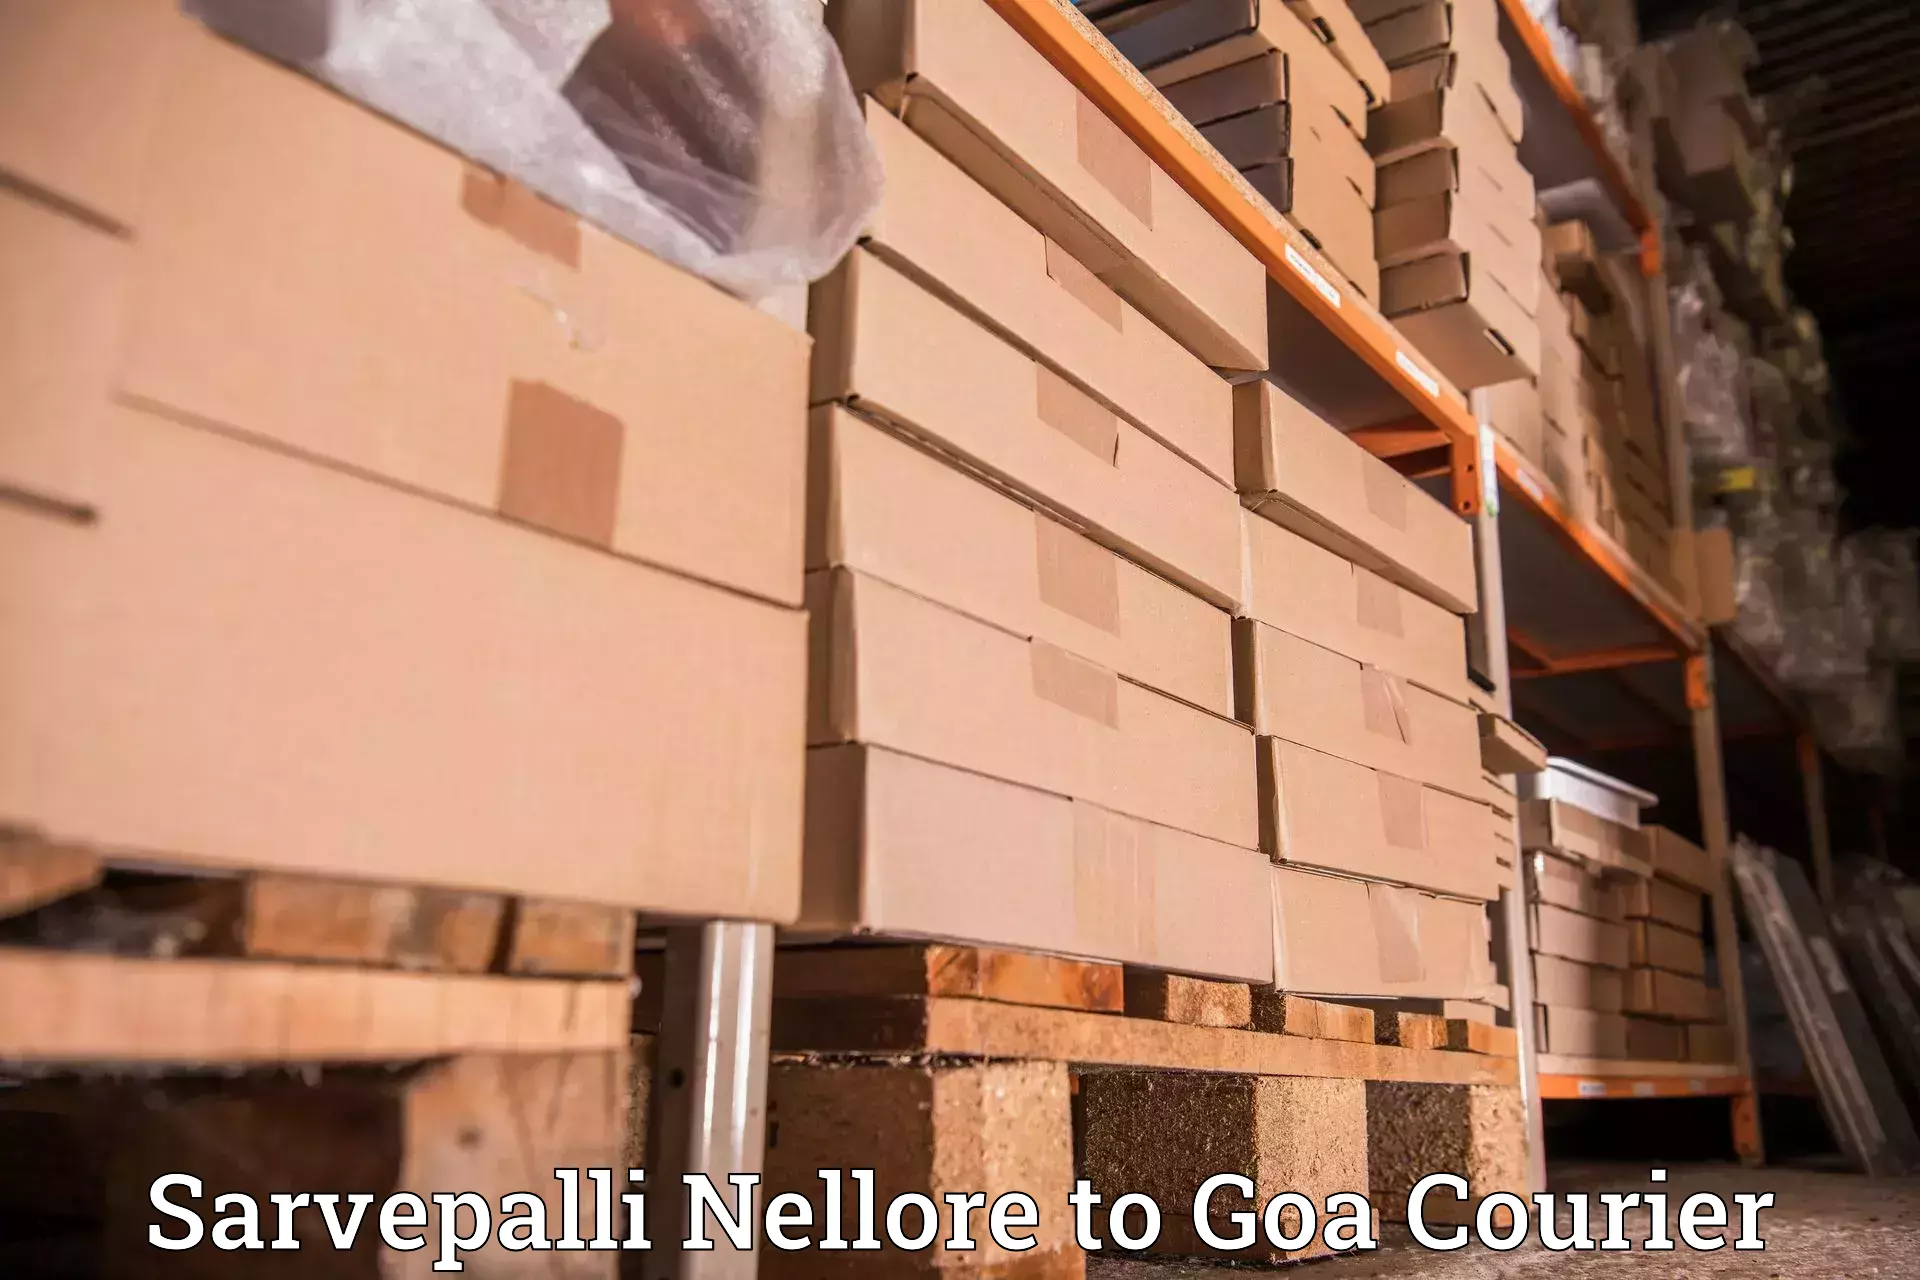 24/7 courier service Sarvepalli Nellore to Vasco da Gama